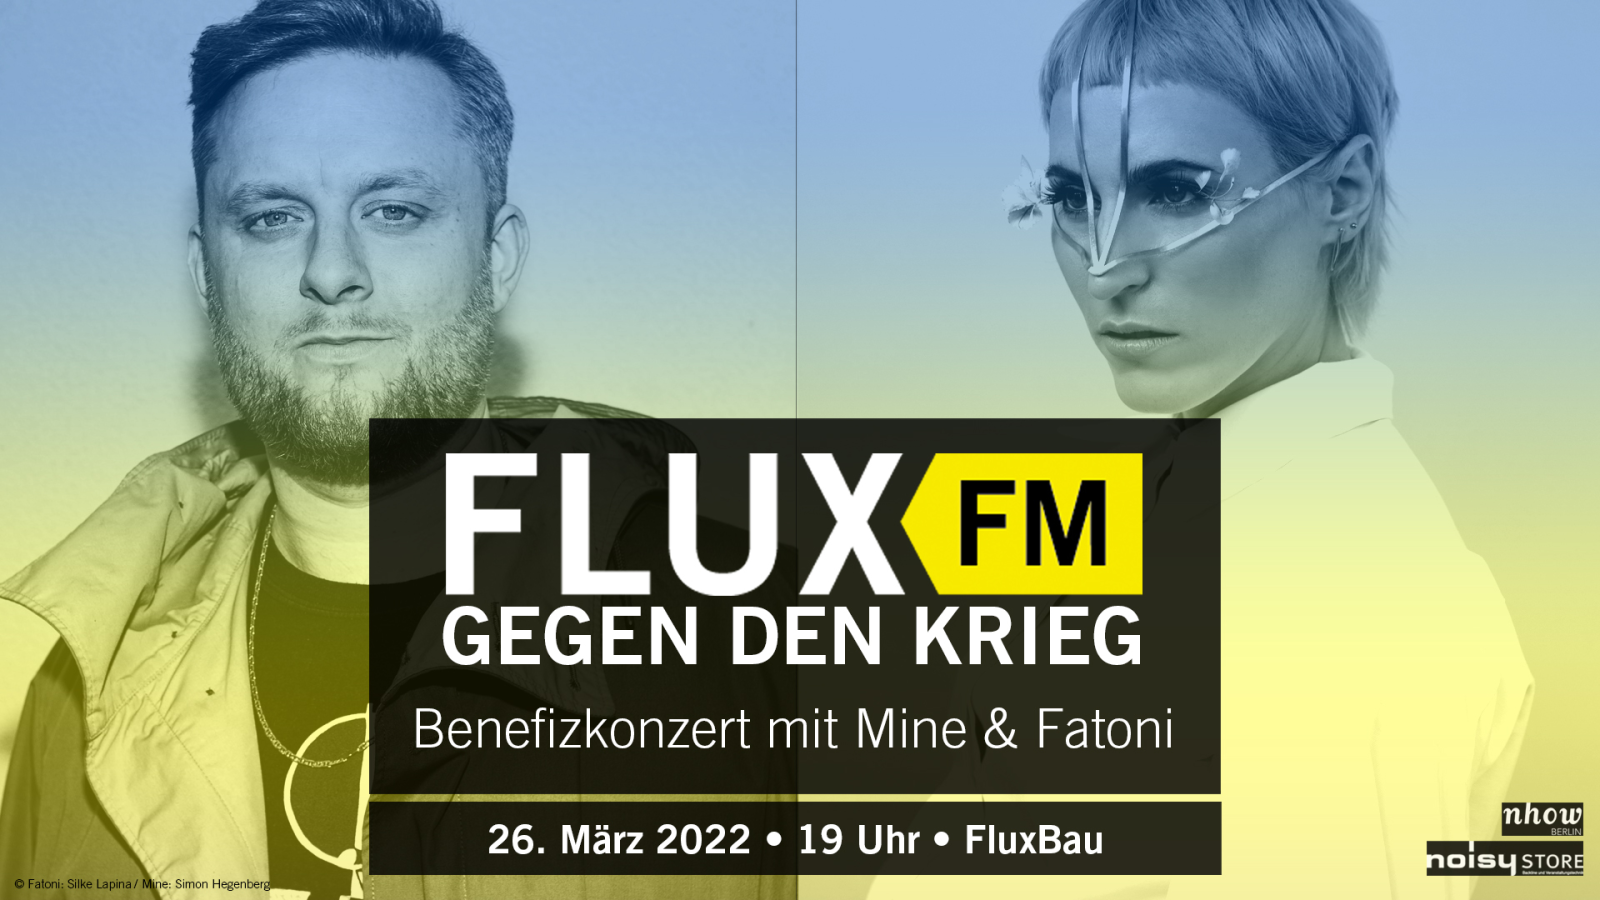 FluxFM gegen den Krieg: Benefizkonzert mit Mine und Fatoni am 26. März im FluxBau